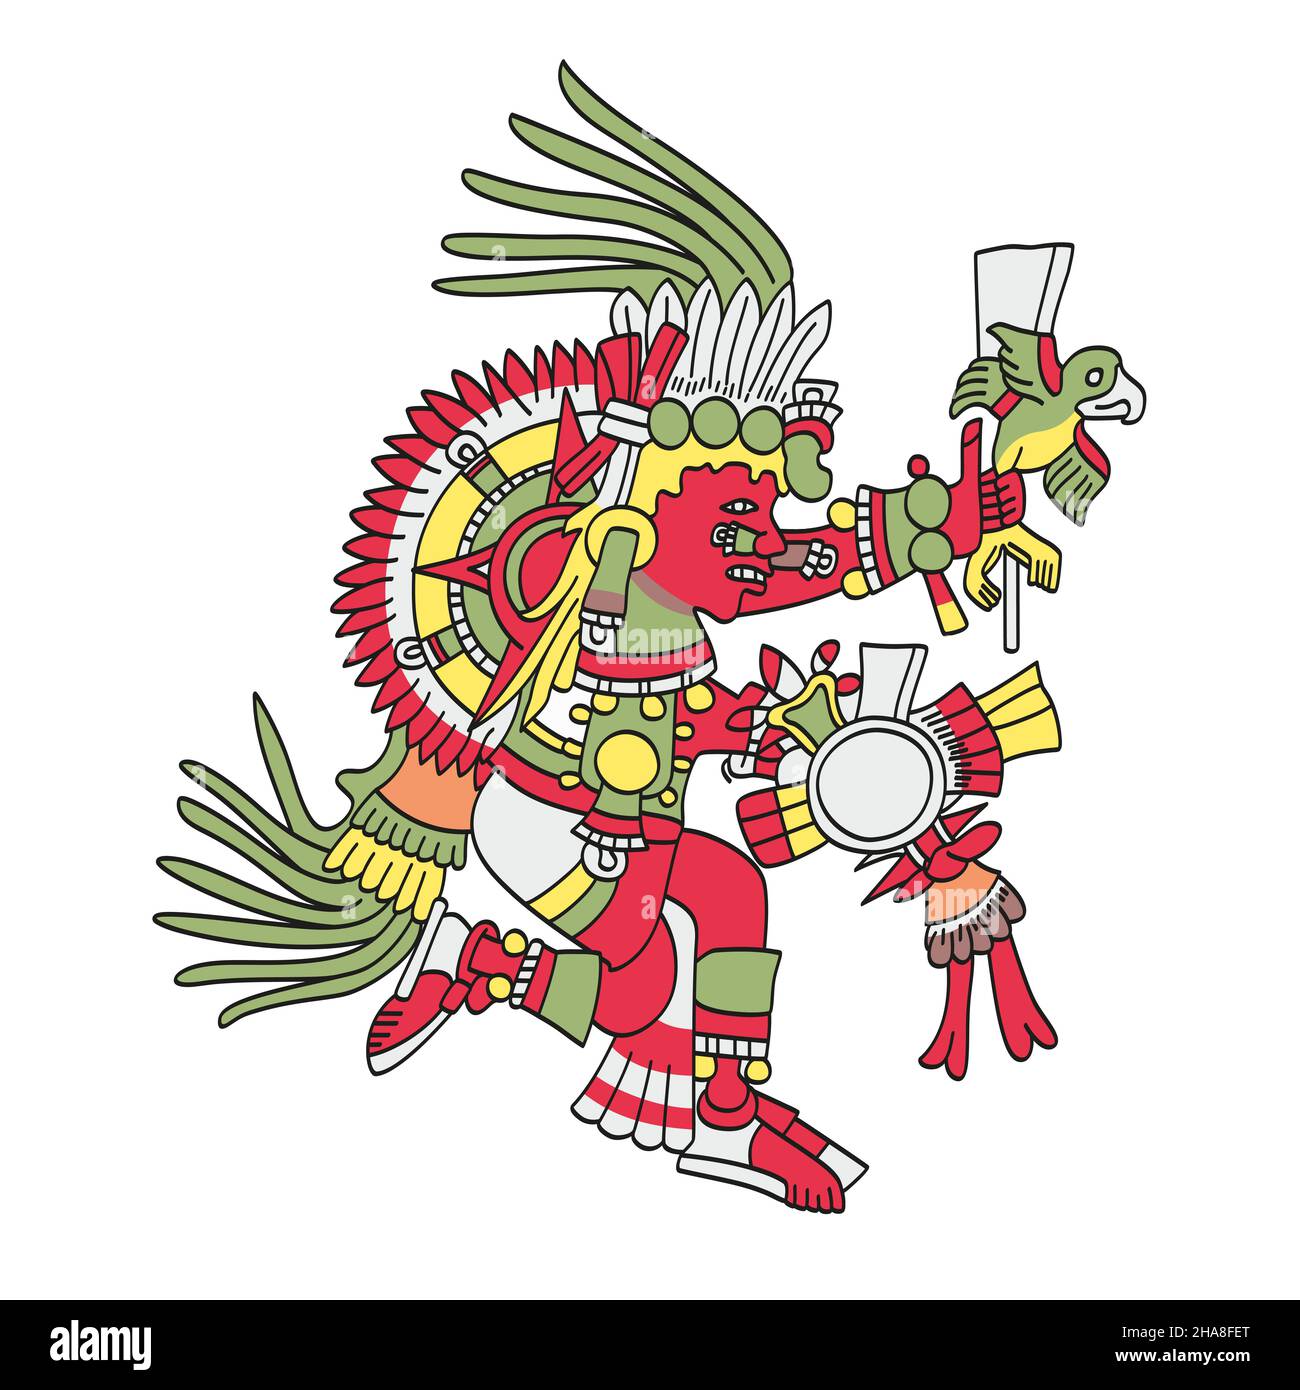 Tonatiuh, fünfte Sonne, Nahui Ollin, aztekischer sonnengott. Sollte die Menschheit scheitern, wird die fünfte Sonne schwarz werden, die Welt wird durch katastrophale Erdbeben erschüttert werden. Stockfoto